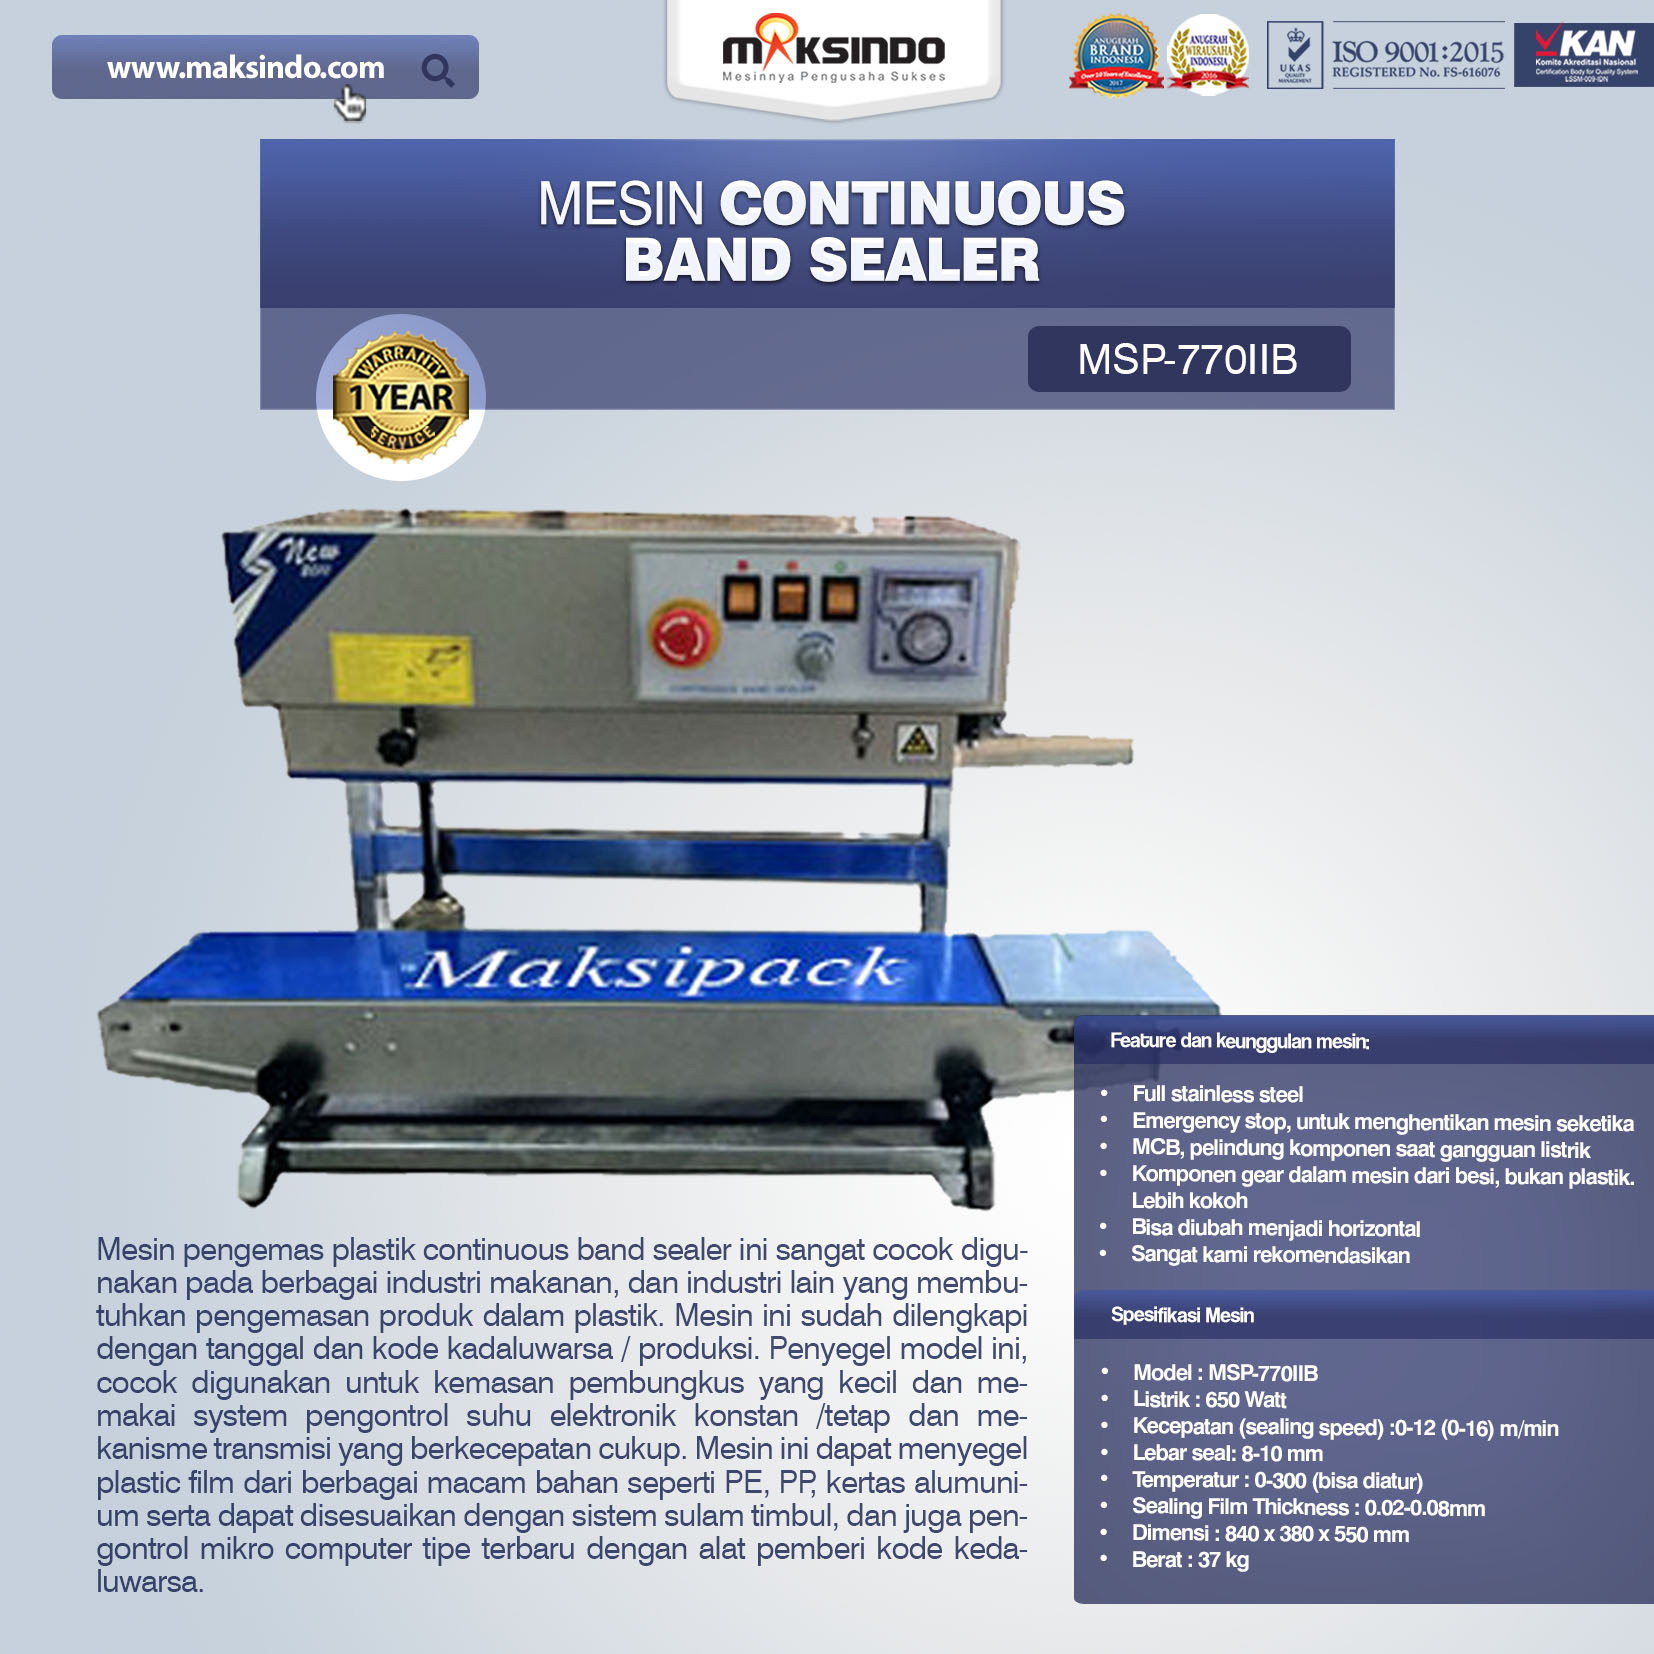 Jual Mesin Continuous Band Sealer MSP-770IIB di Banjarmasin